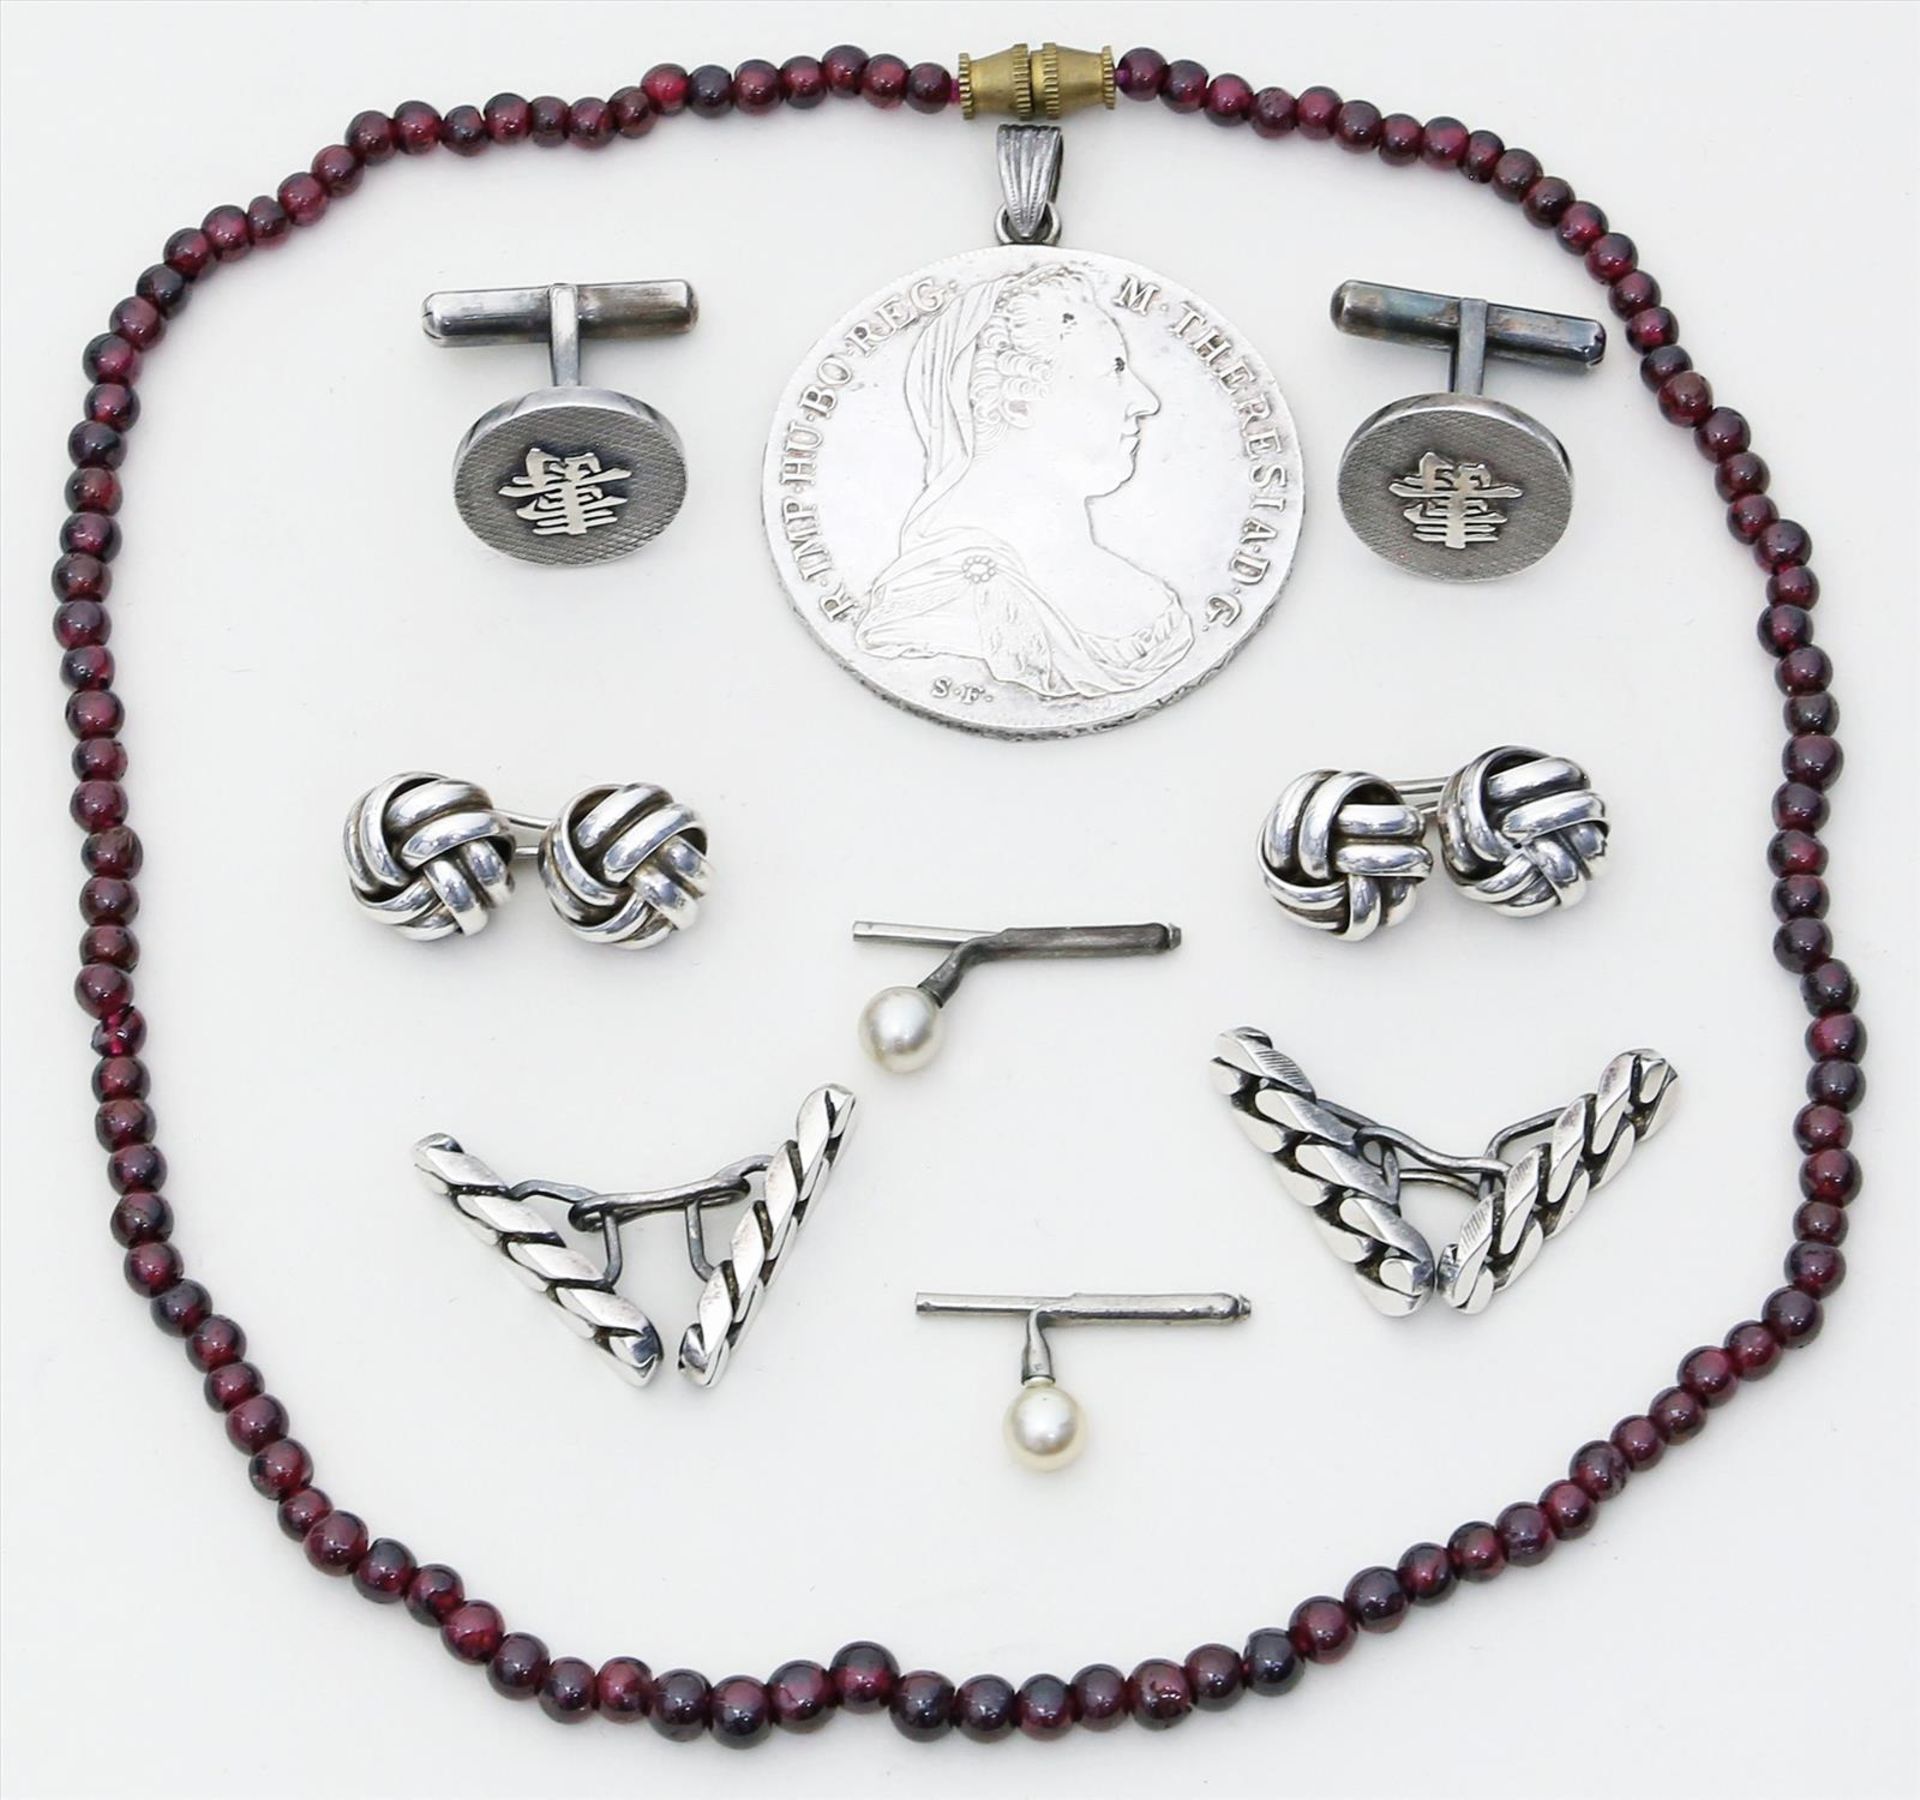 3 Paar Manschettenknöpfe.Silber. Beigegeben: Maria-Theresien-Taler mit Öse, Granatkette (L. 42 cm)